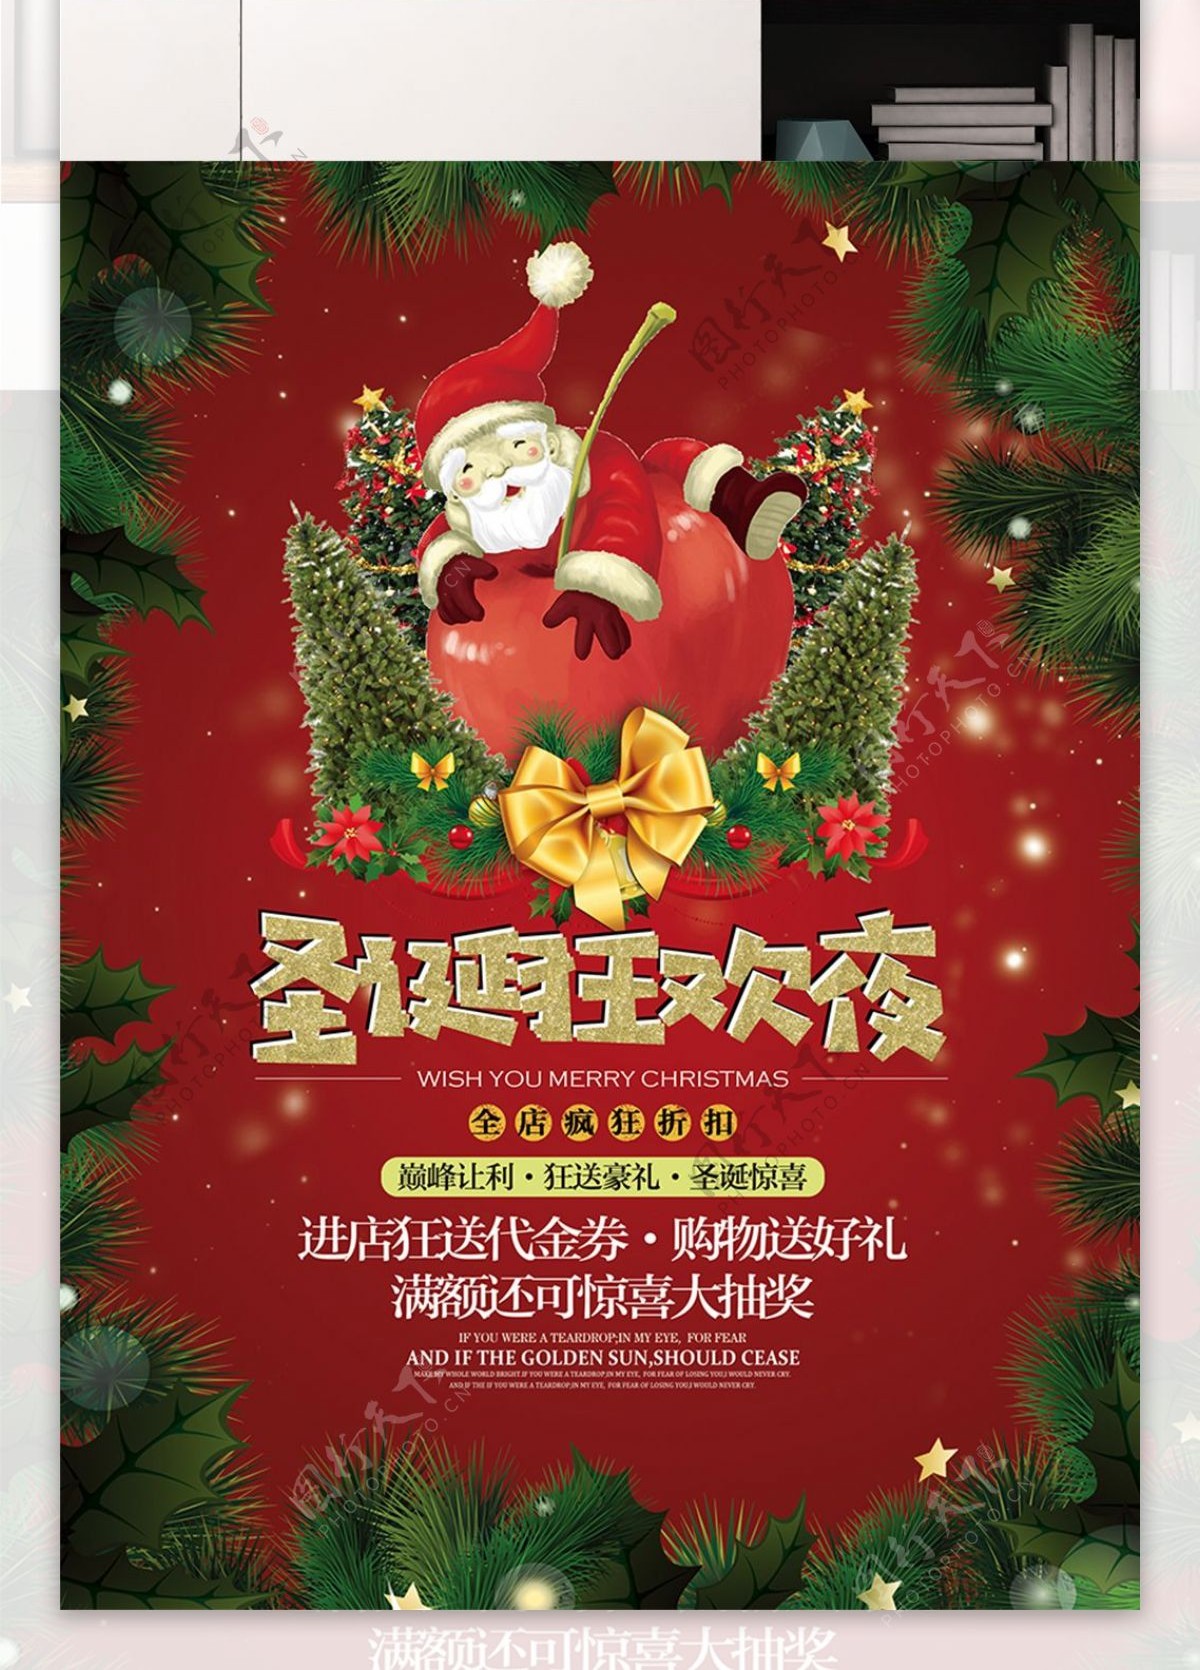 圣诞狂欢夜节日喜庆宣传促销海报展板